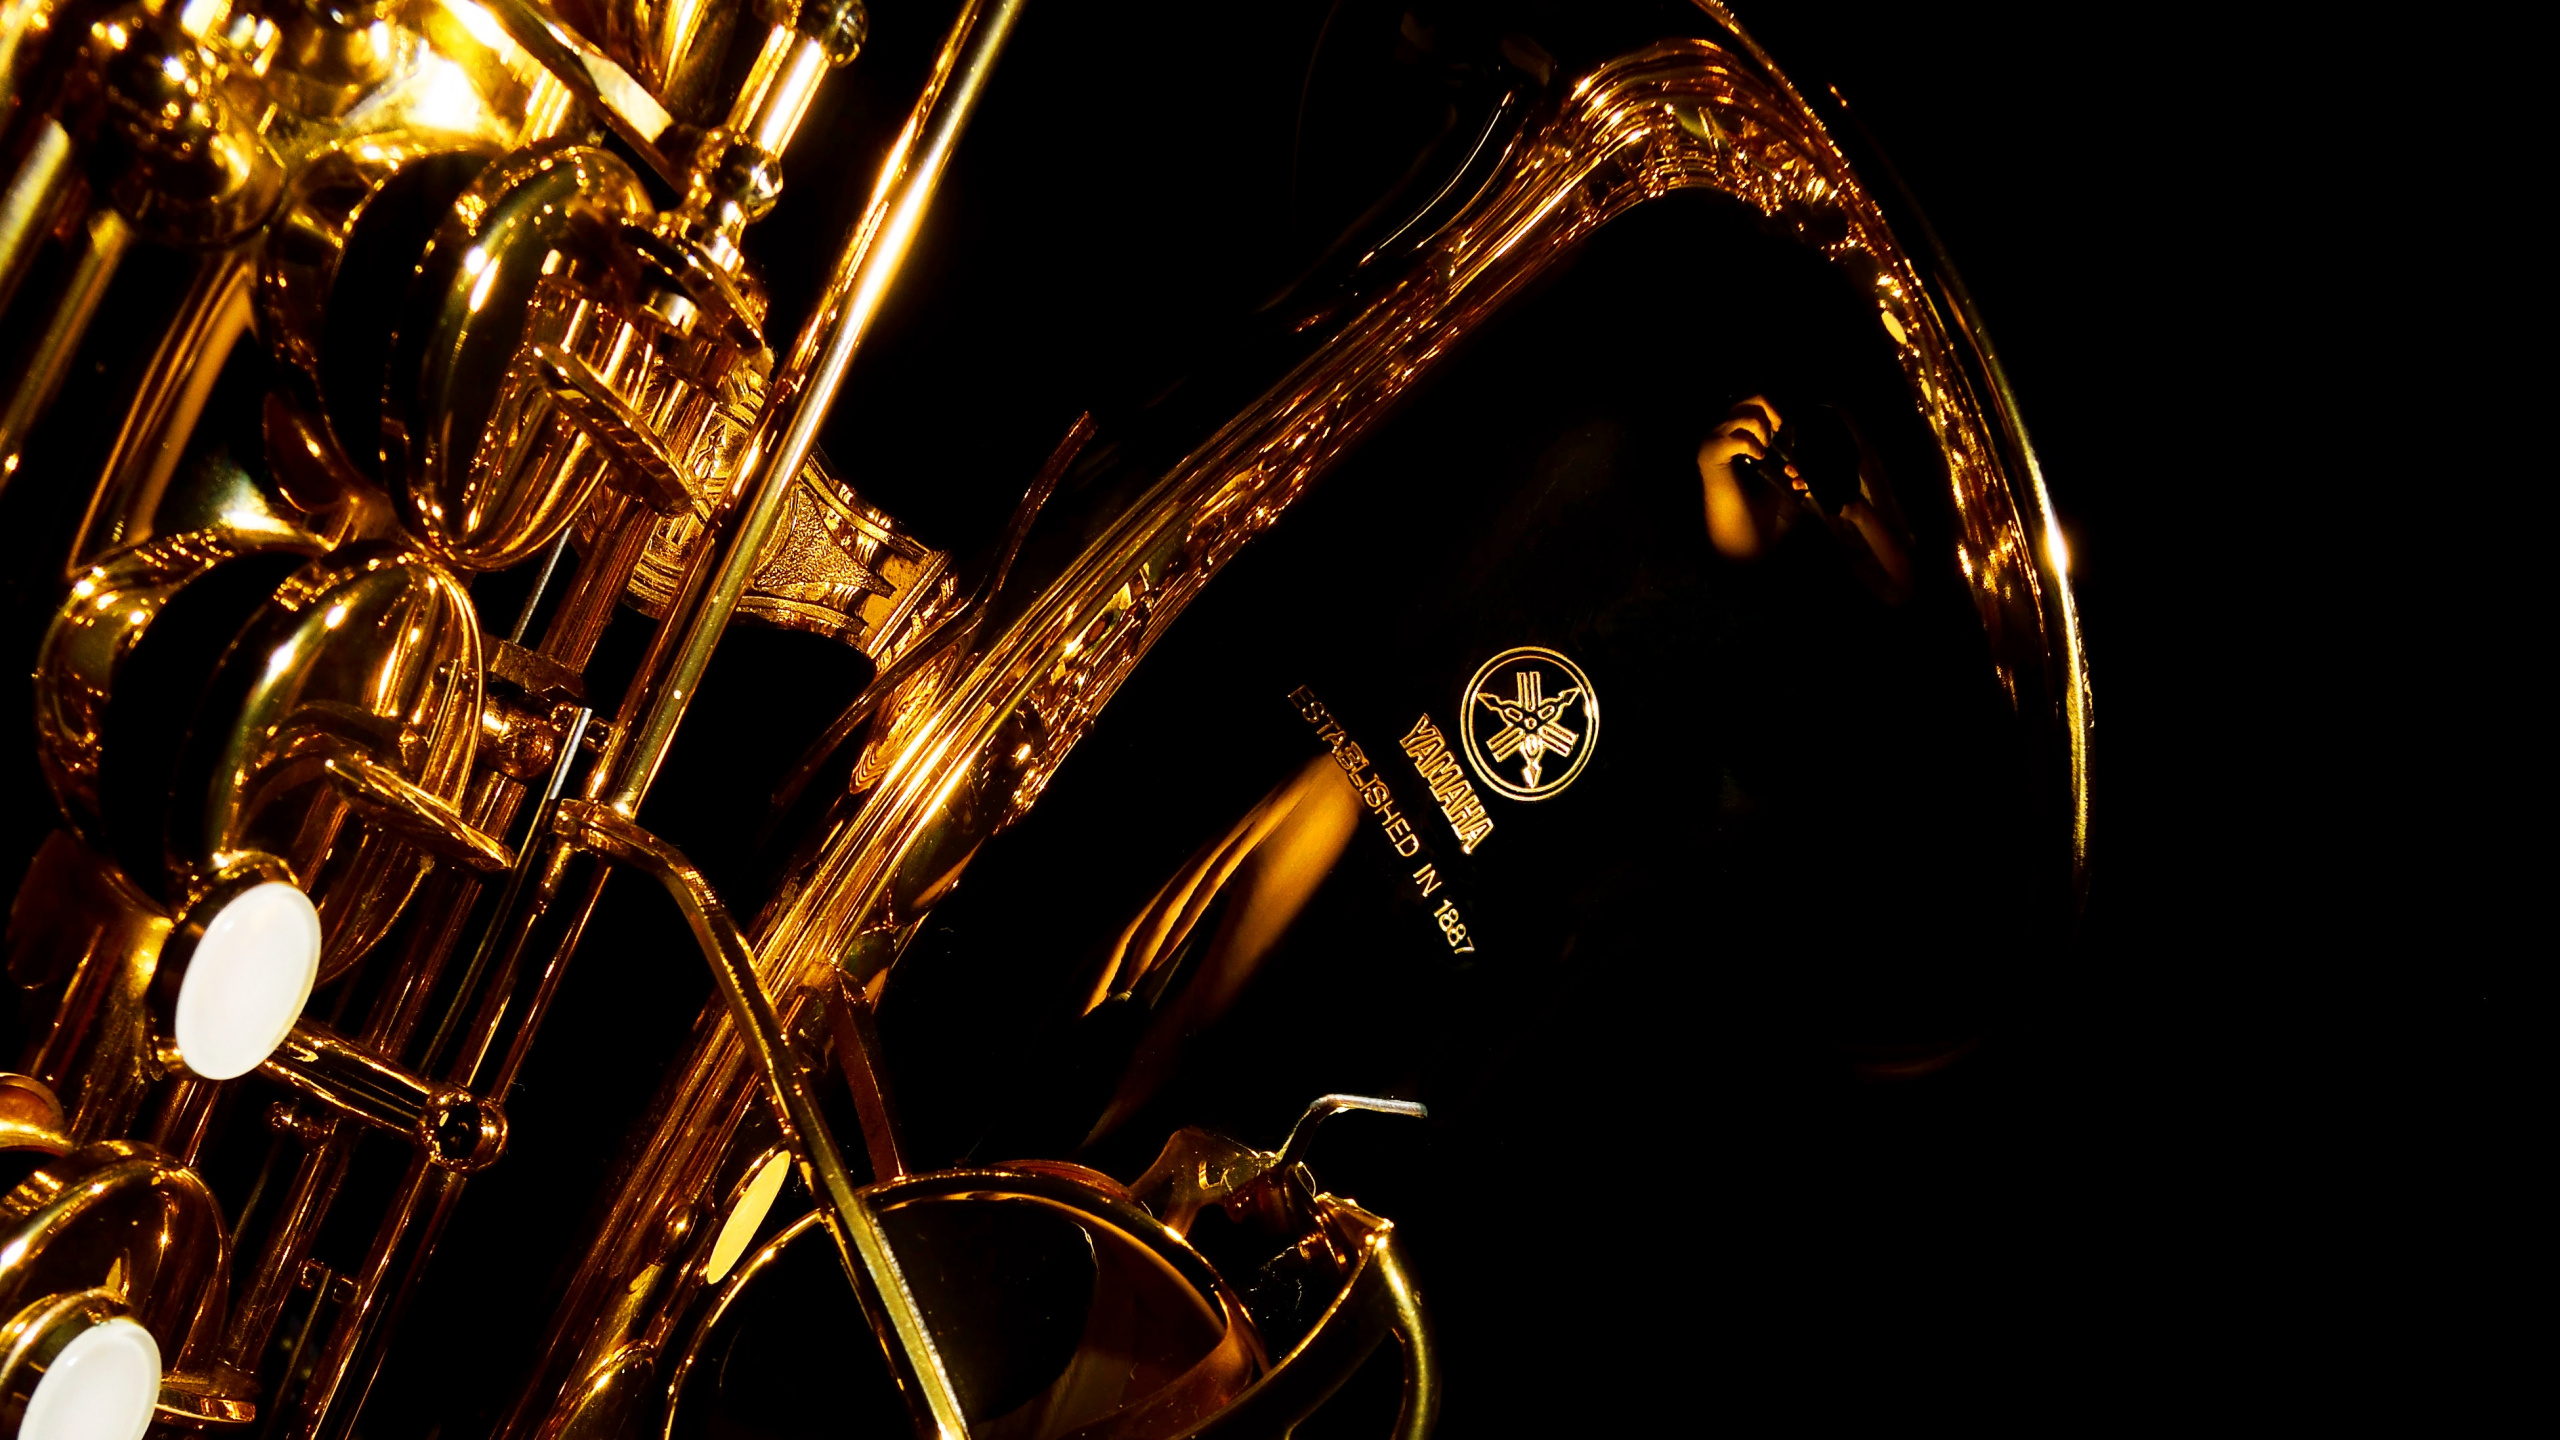 Trumpet, Saxophone, Brass Instrument, Wind Instrument, Violin. Wallpaper in 2560x1440 Resolution